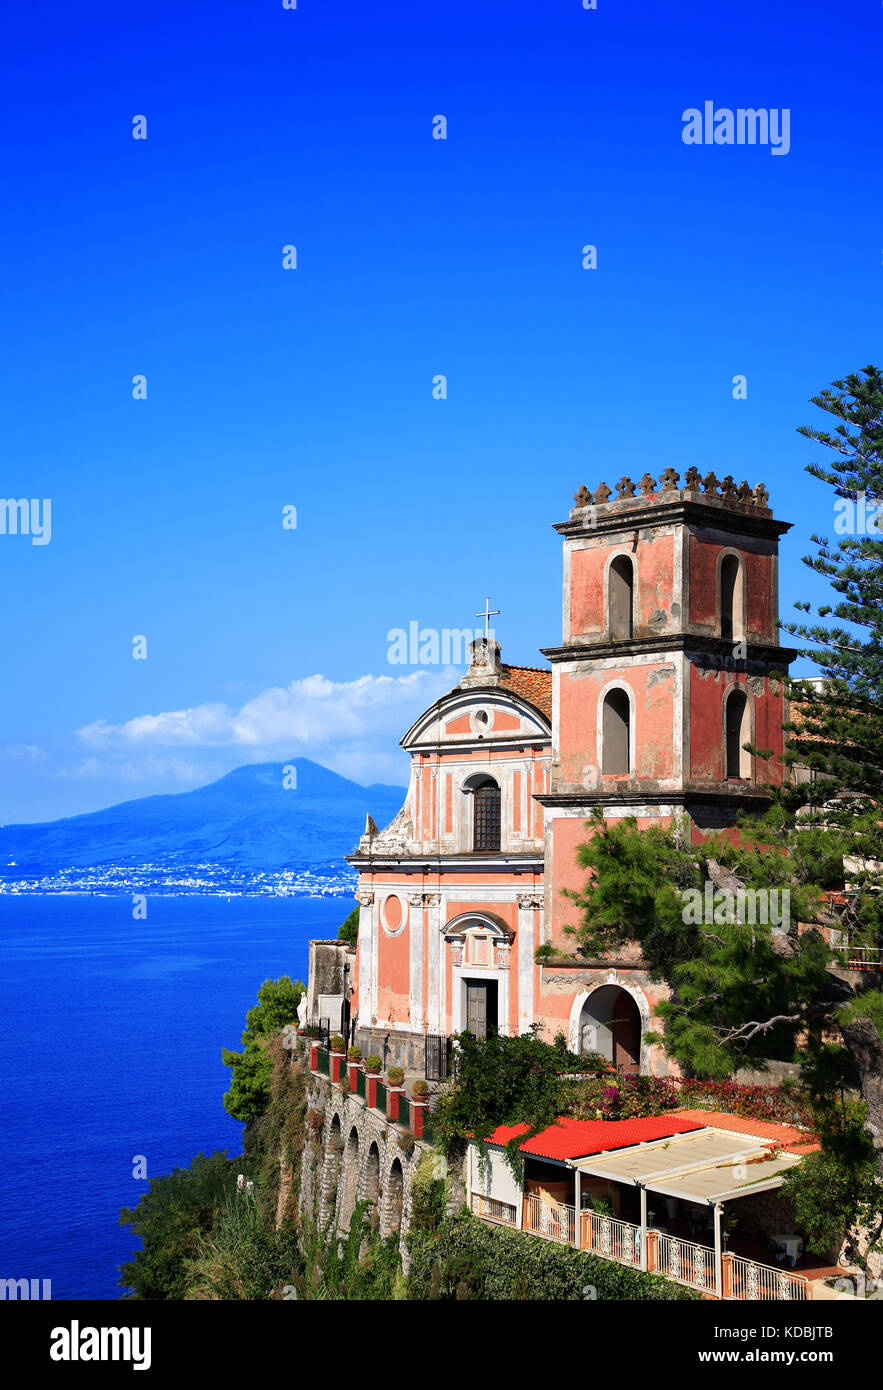 Church Santissima Annunziata, Vico Equense, Peninsula of Sorrento, Campania, Italy. Volcano Vesuvius in the background. Stock Photo